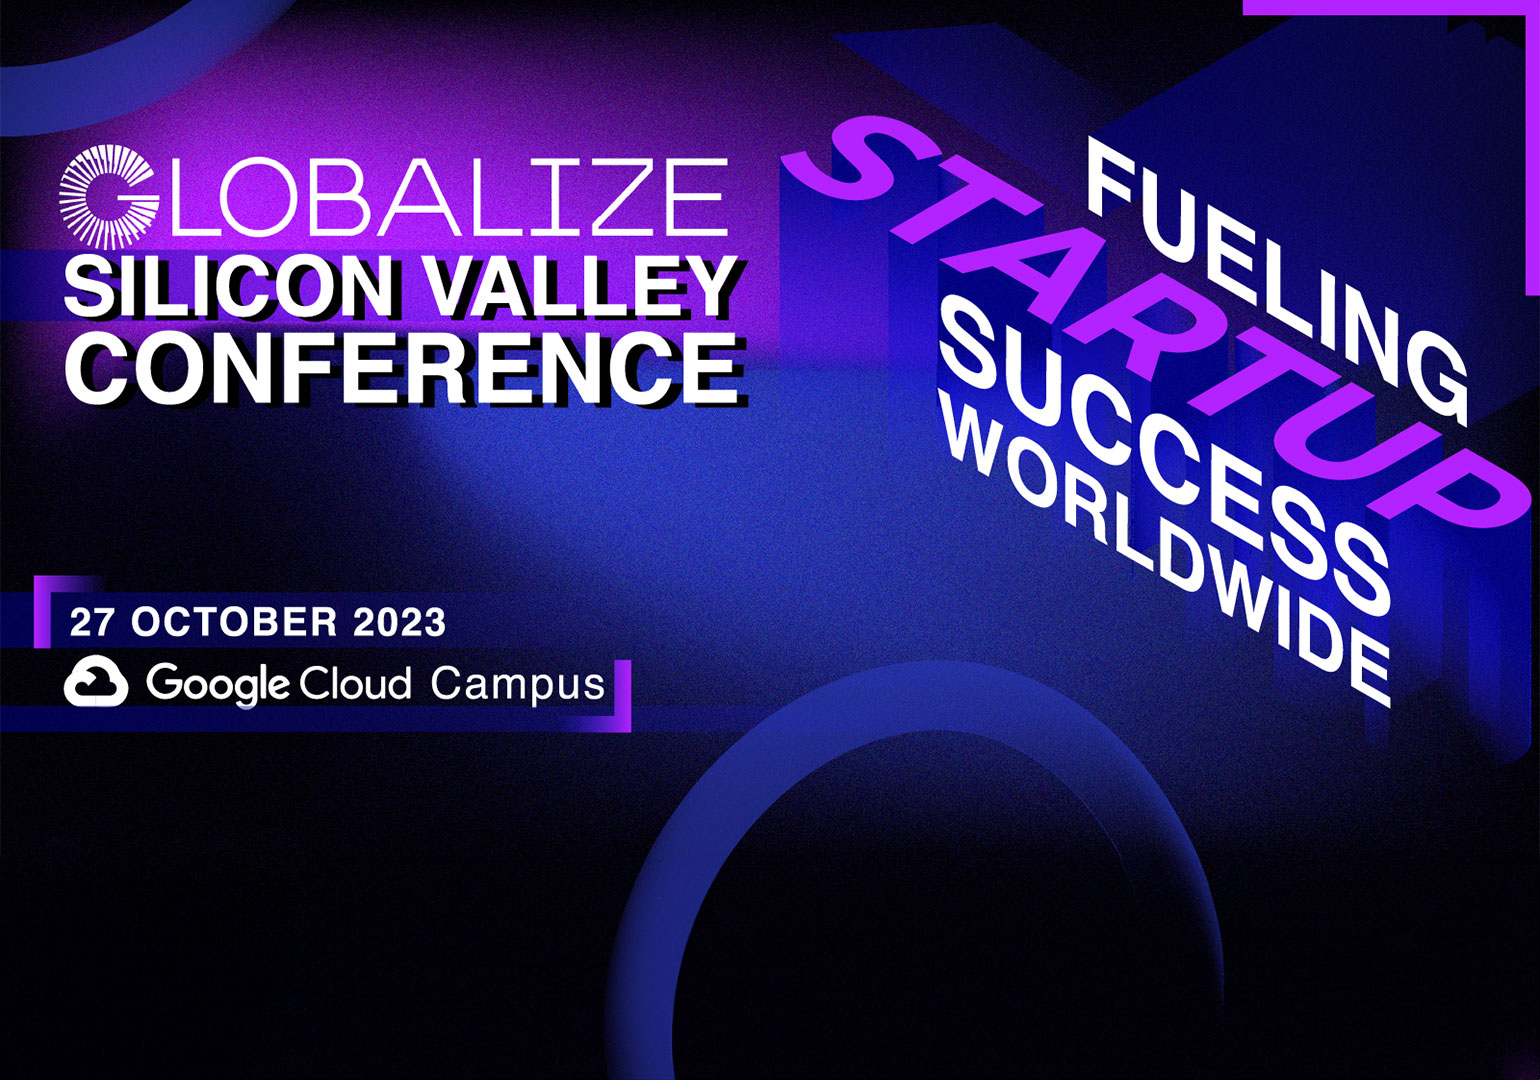 Globalize-ის მორიგი კონფერენცია სილიკონის ველზე, Google Campus-ში ჩატარდება